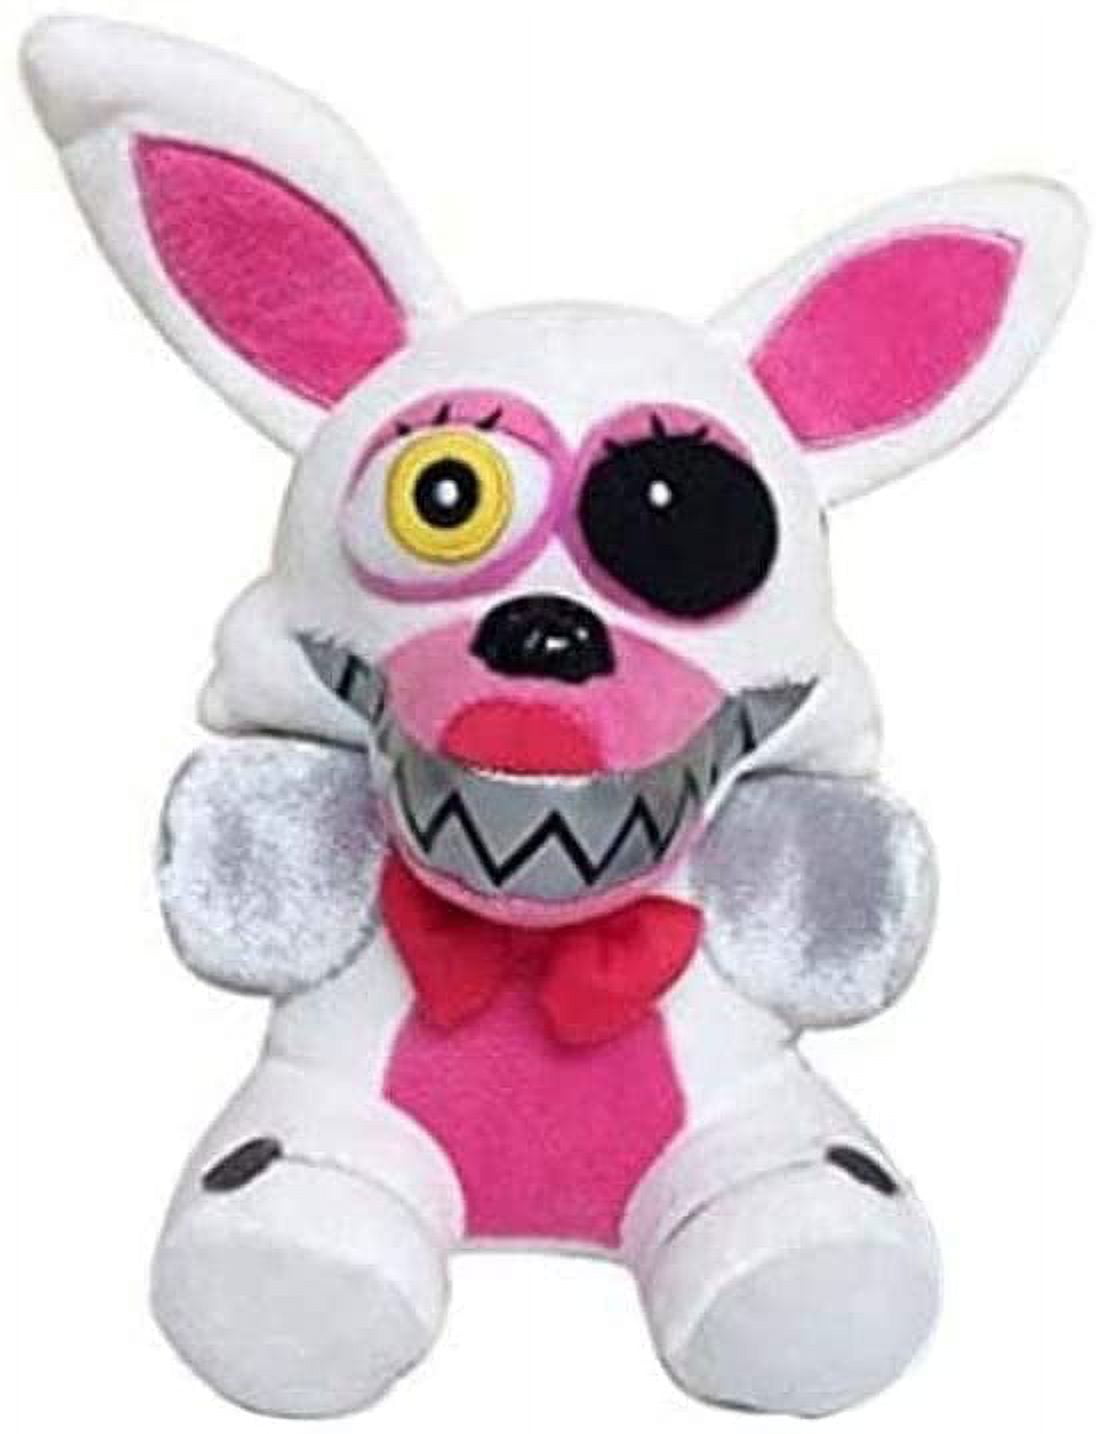 20cm Five Nights At Freddys FNAF Plush Toys Freddy Bear Foxy Chica Bonnie  Stuffed Animal Dolls Xmas Birthday Gifts From Fine333, $3.76